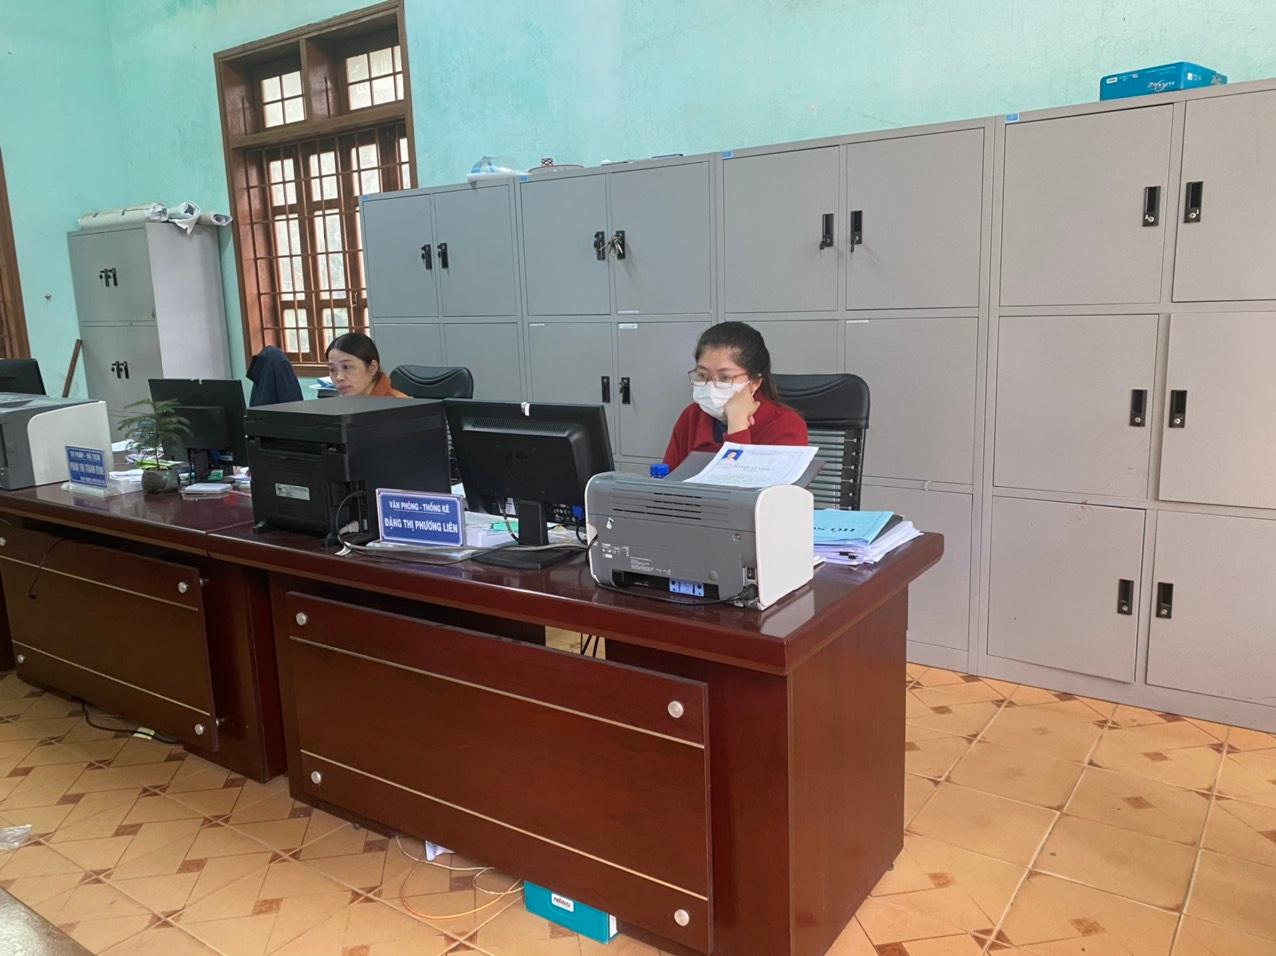 UBND thị trấn Khe Sanh ban hành Kế hoạch tuyên truyền cải cách hành chính năm 2022